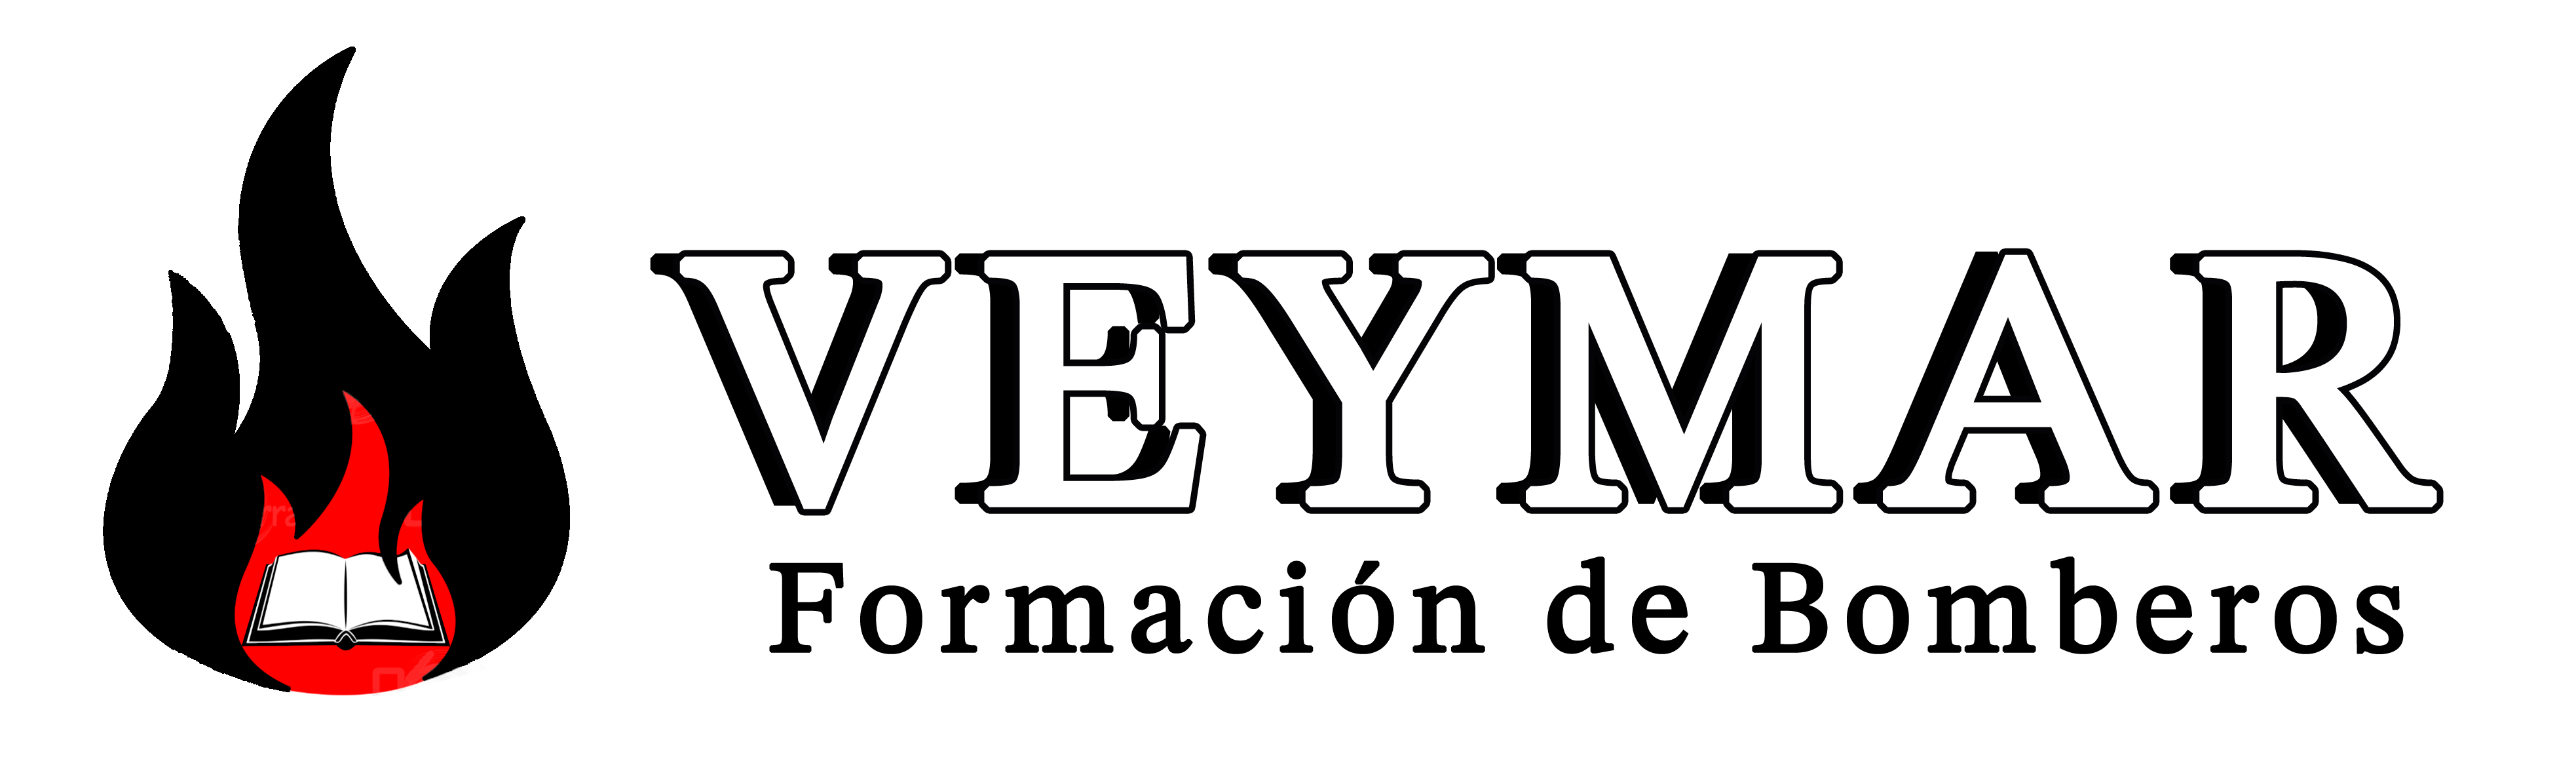 Veymar - Oposiciones de Bomberos